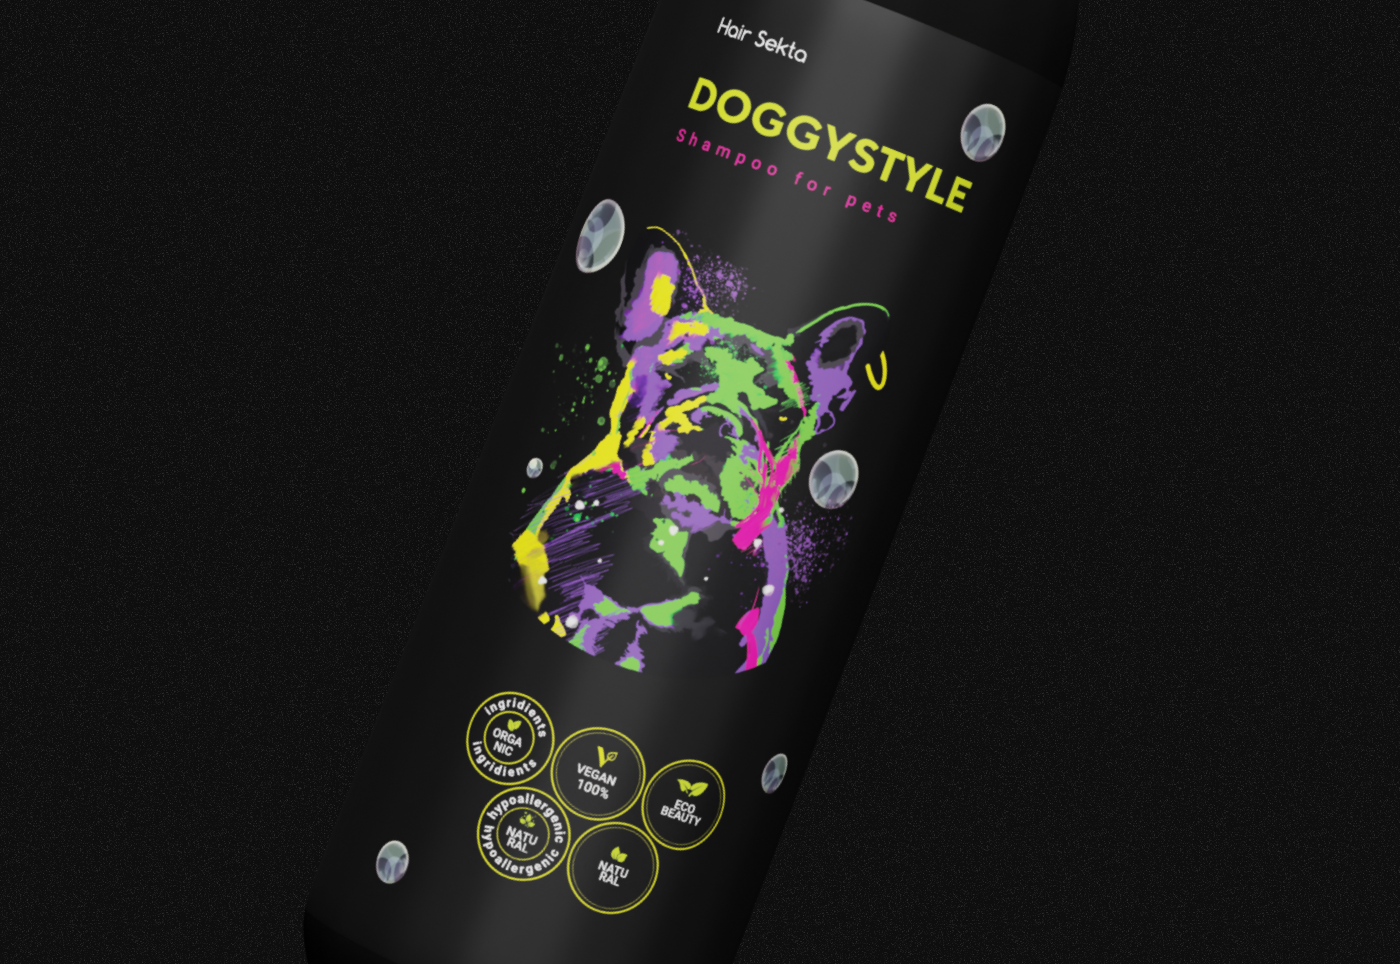 3D 3danimation bottle label design package design  packaging design product product design  shampoo дизайнупаковки